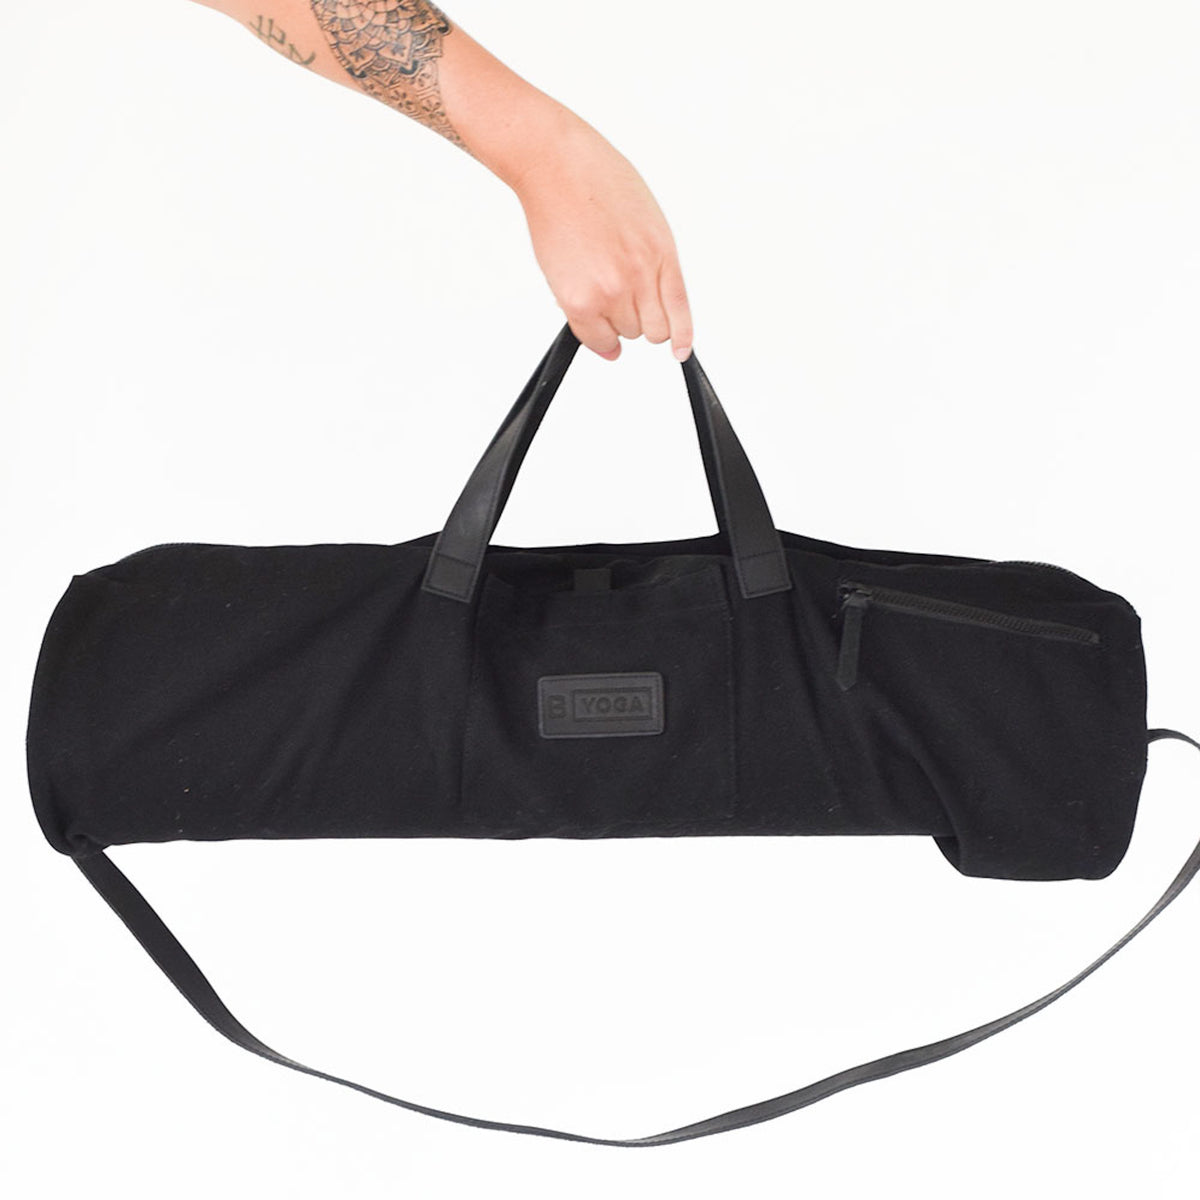 B YOGA Mat Duffle Bag on model